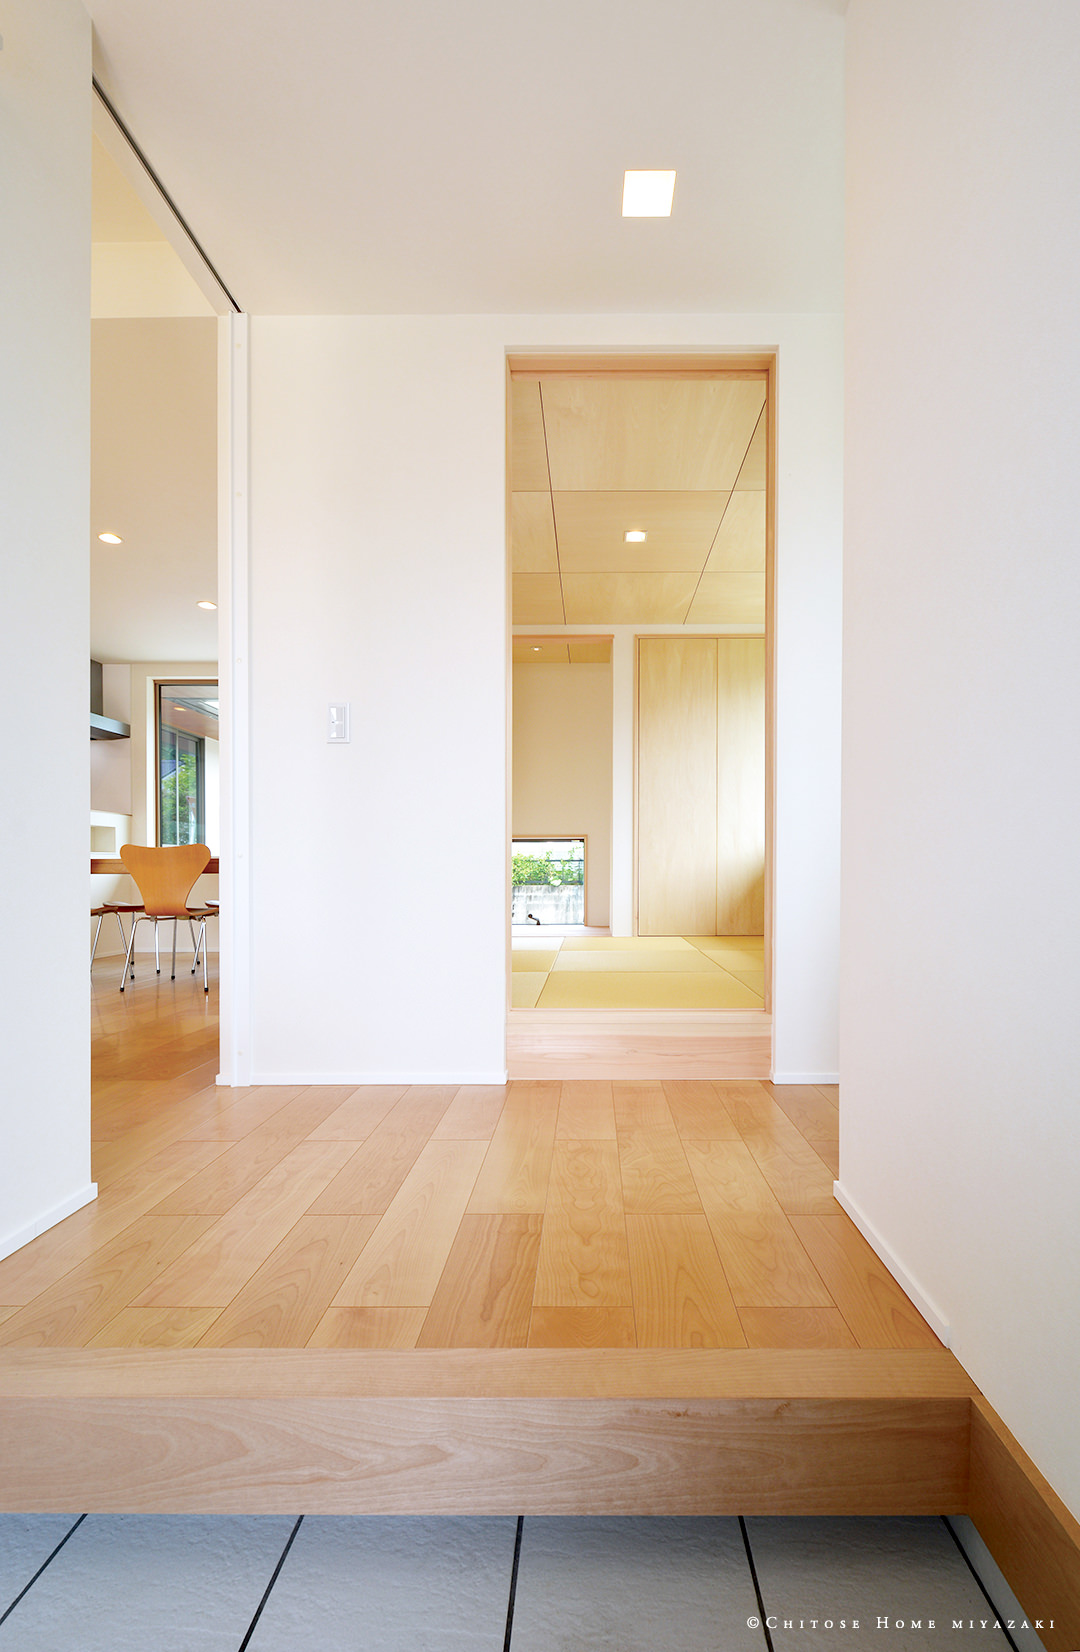 玄関ホールから直接和室へアクセスできる動線を確保。来客と家族の居心地の良さと使いやすさに考慮した、住み手の気遣いある設計に。